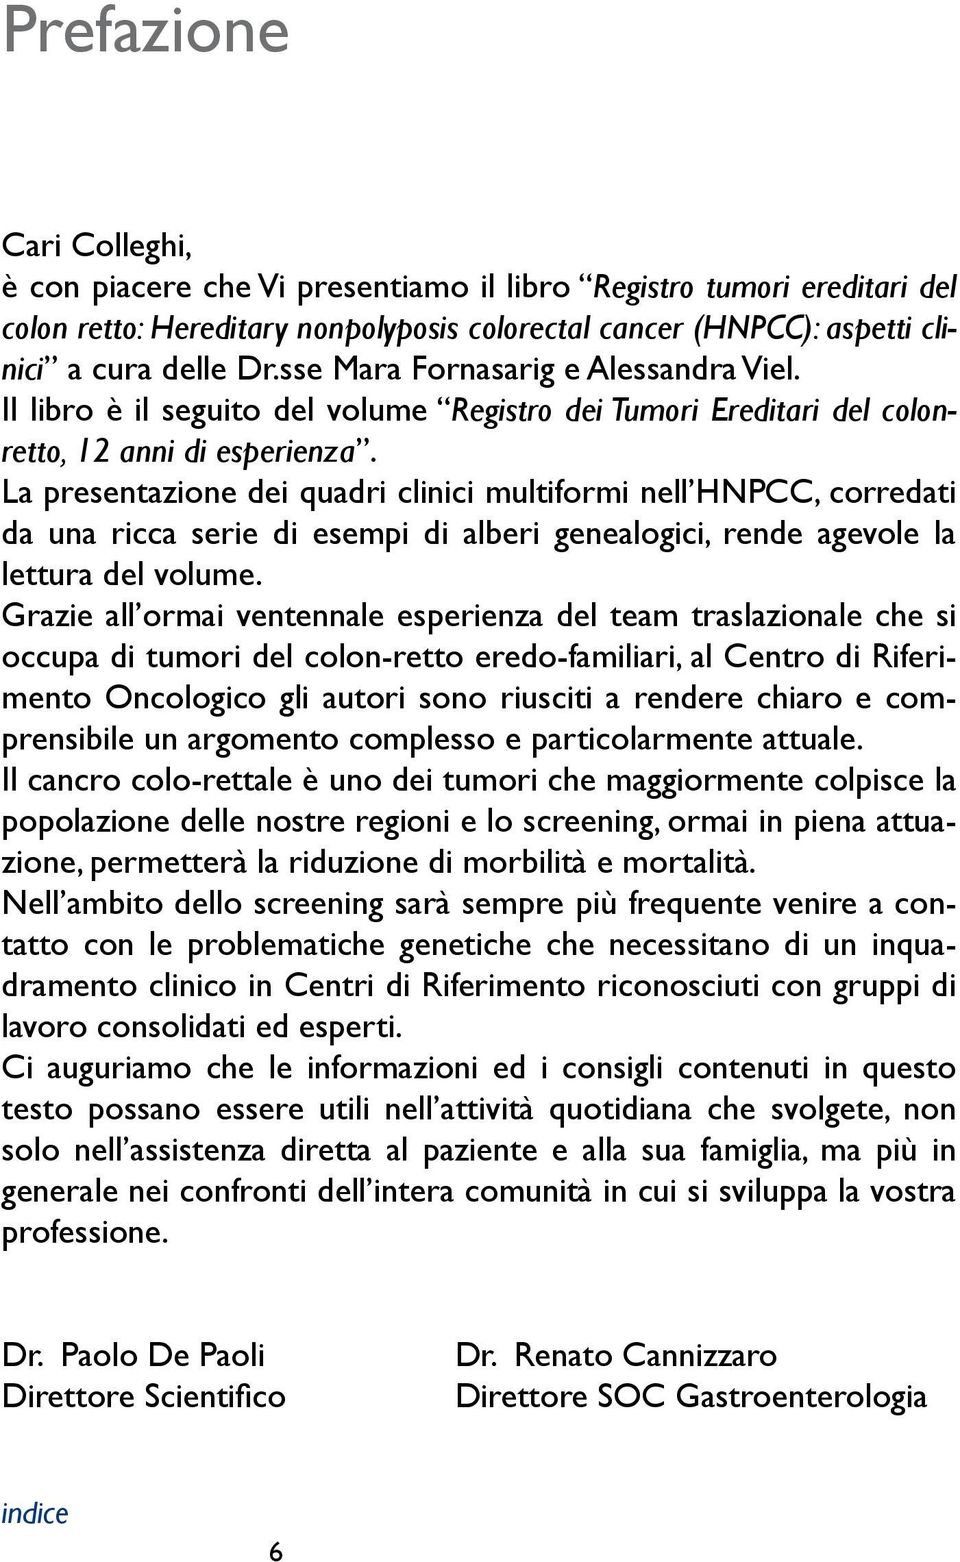 La presentazione dei quadri clinici multiformi nell HNPCC, corredati da una ricca serie di esempi di alberi genealogici, rende agevole la lettura del volume.